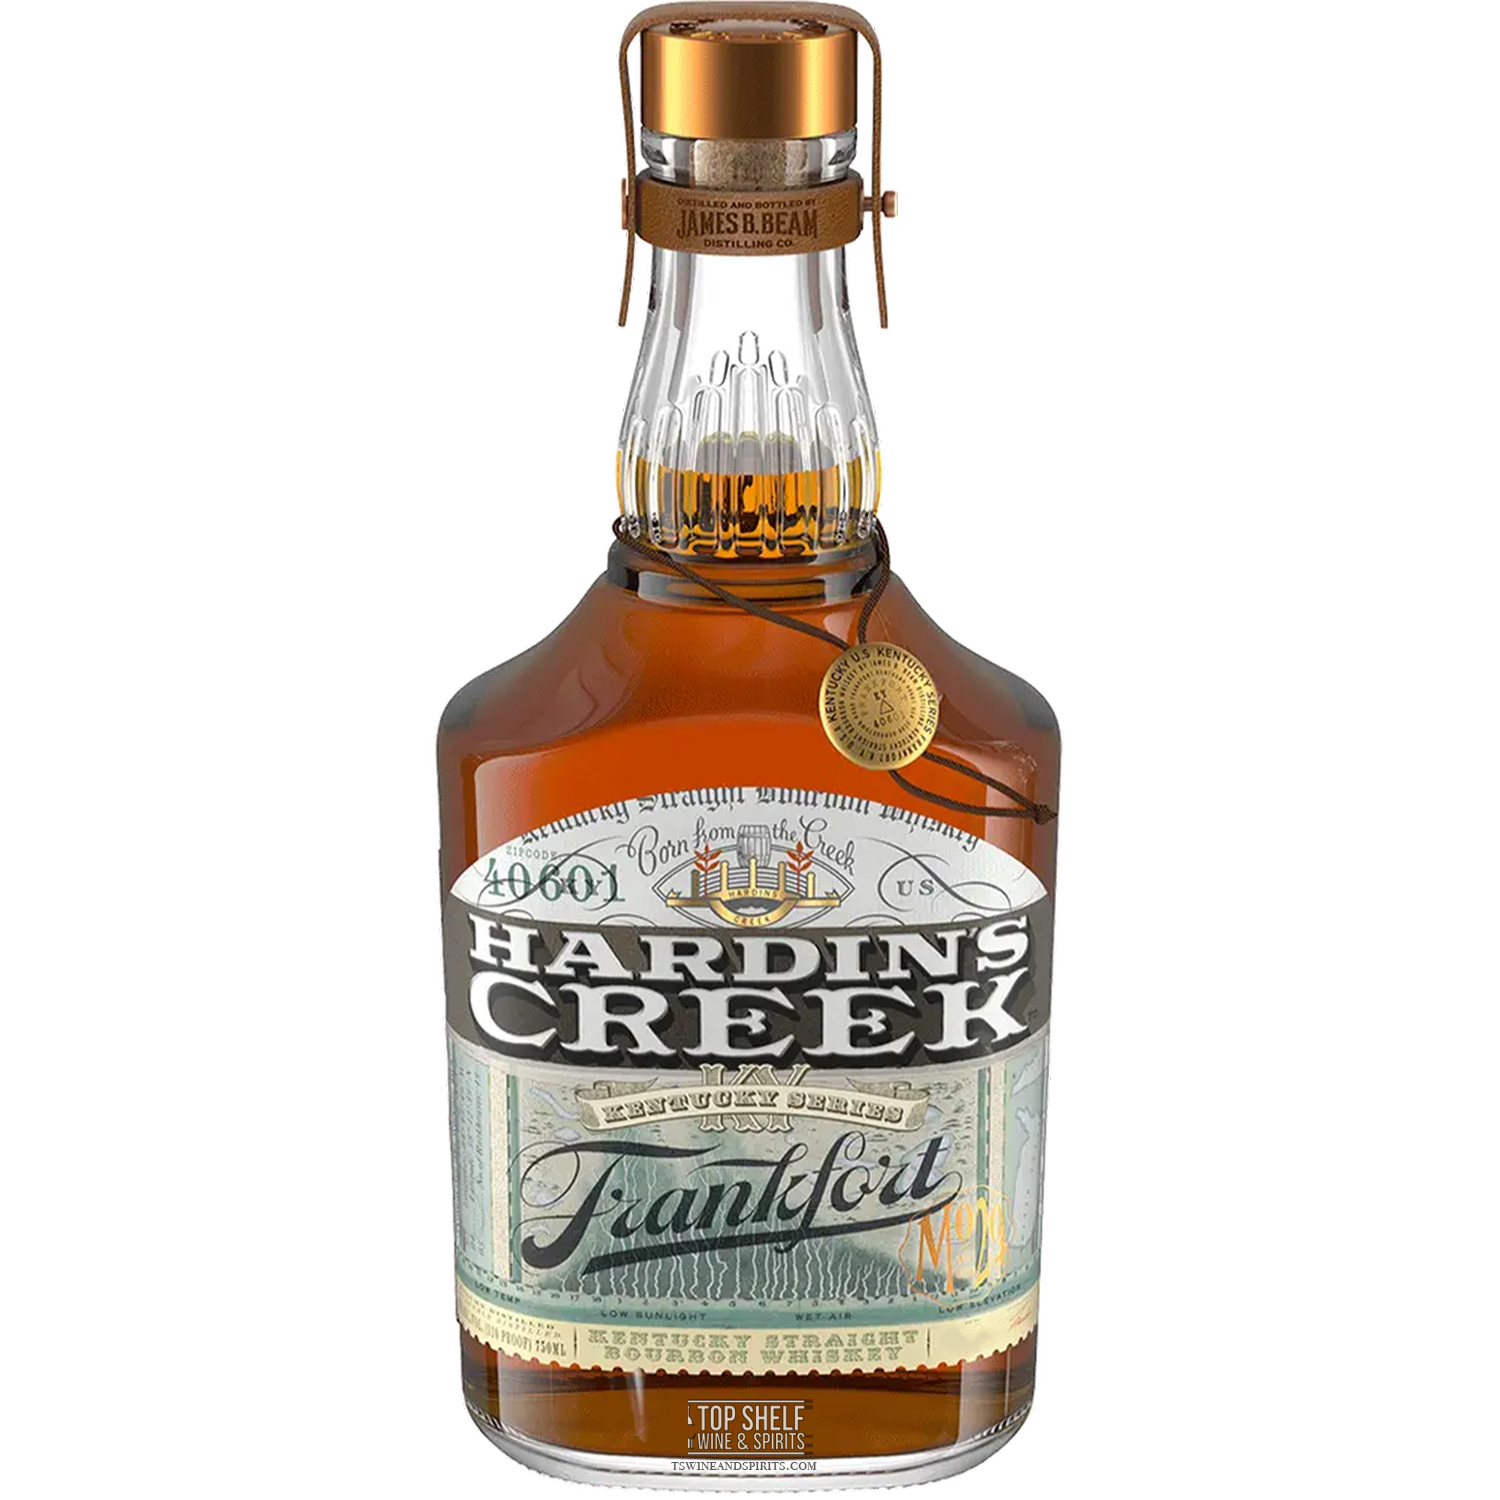 Hardin's Creek Frankfort Kentucky Straight Bourbon